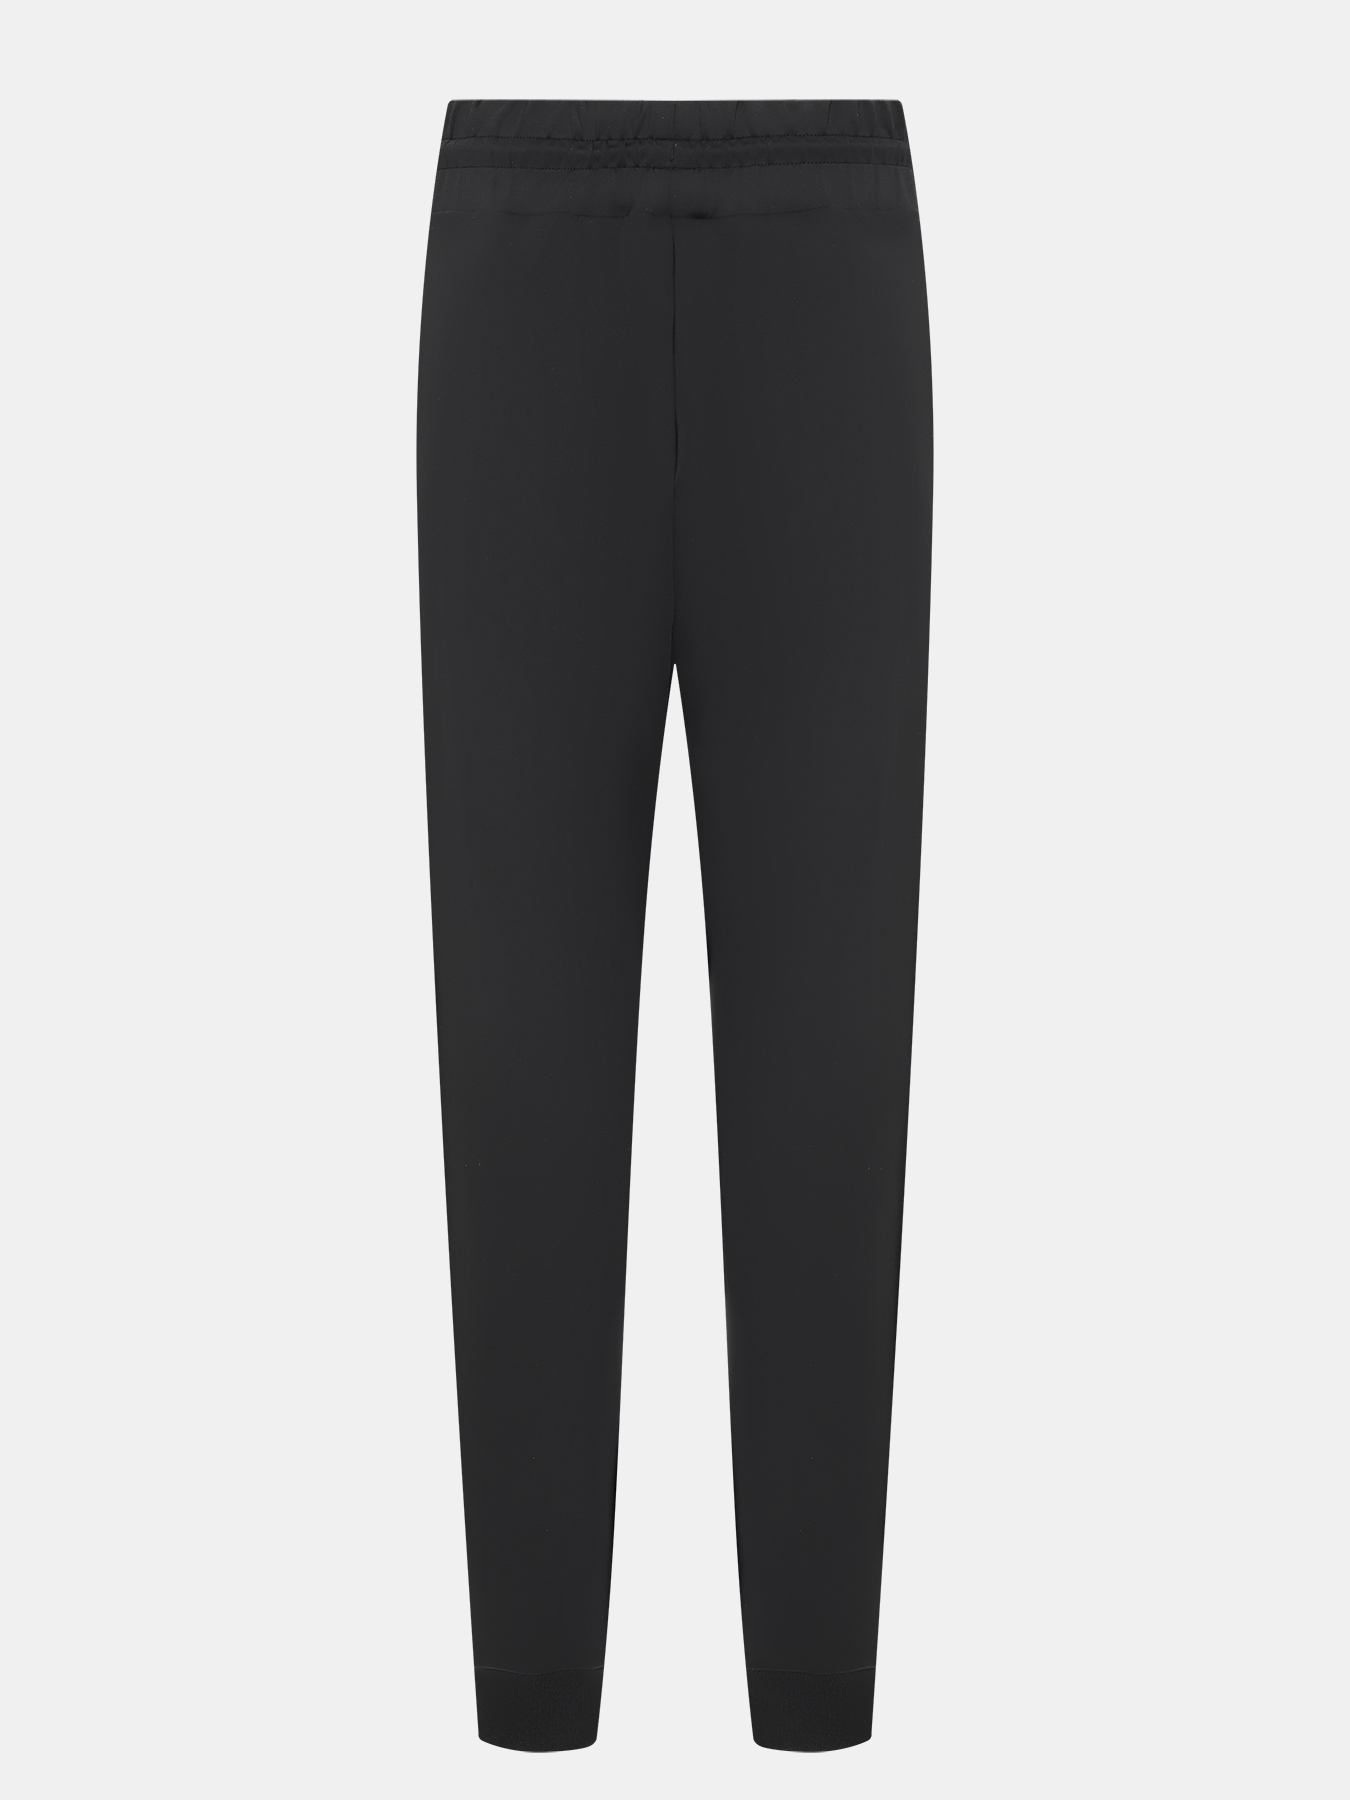 Спортивные брюки Narcy HUGO 420599-043, цвет черный, размер 44-46 - фото 4